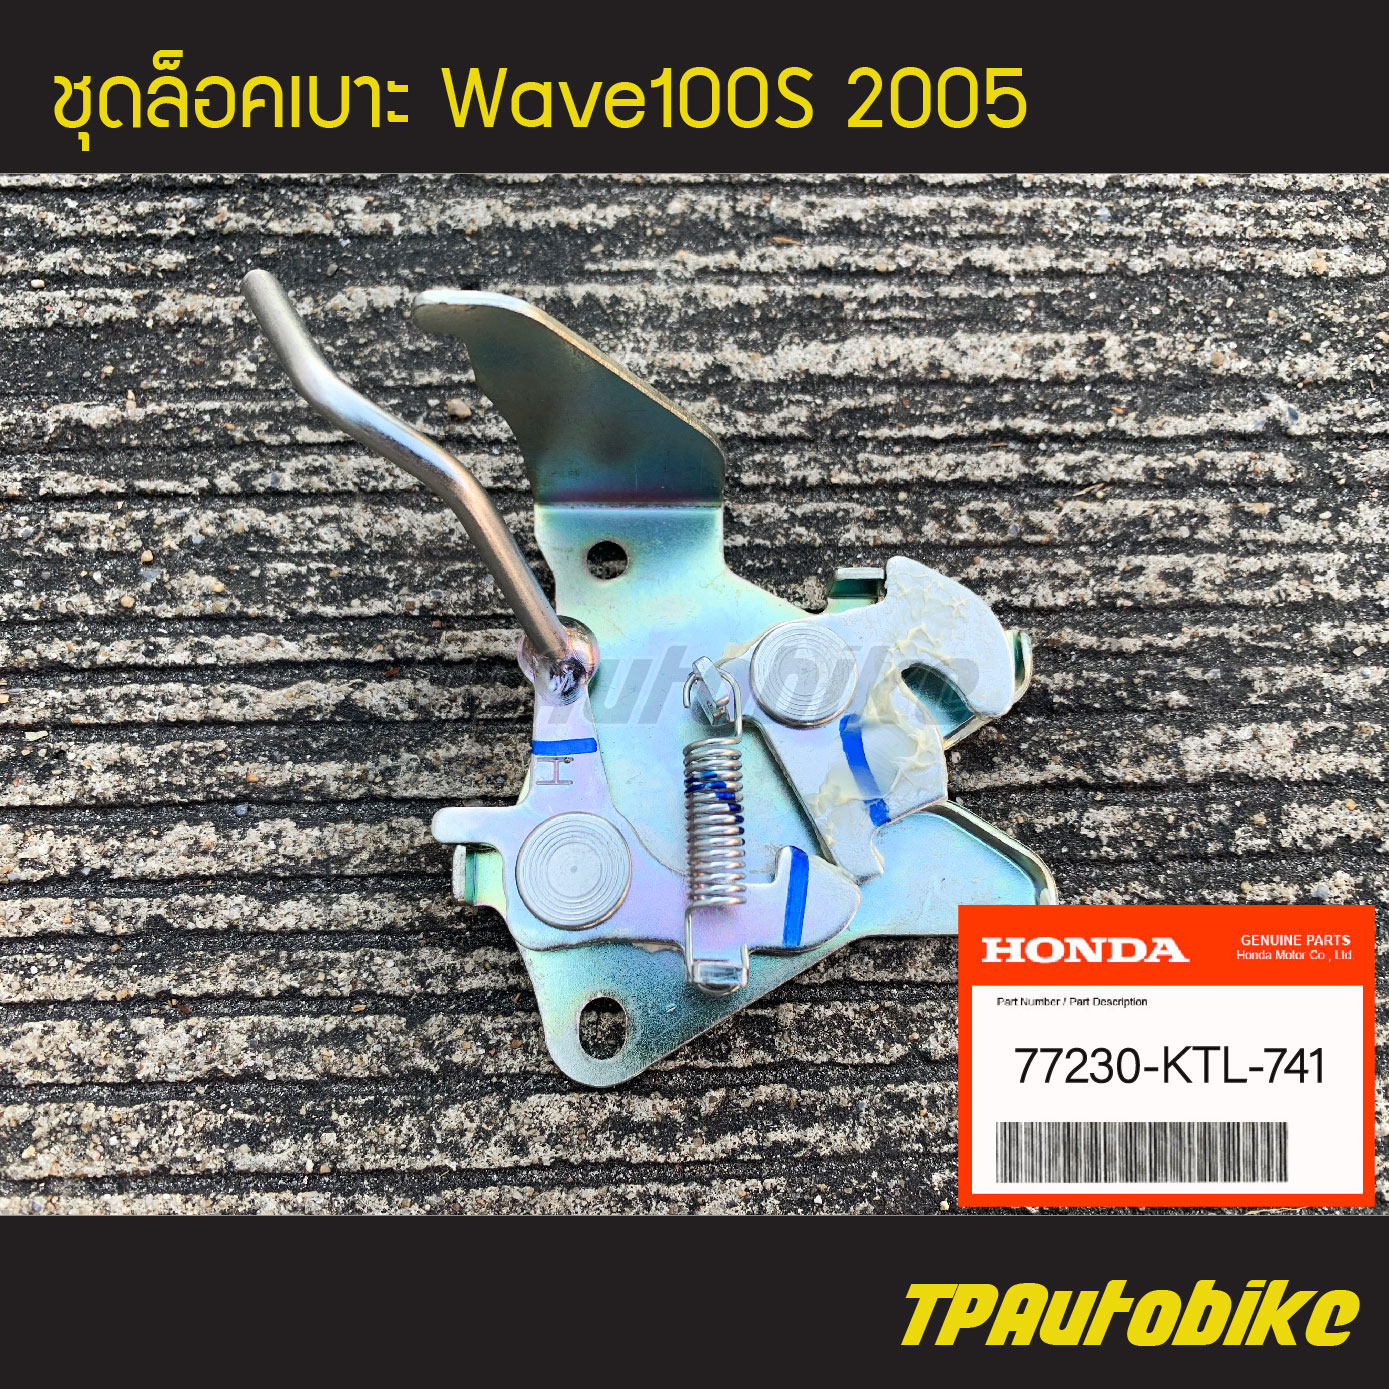 ชุดล็อคเบาะ ขายึดเบาะ ขาล็อคเบาะ Wave100s2005 Wave100Ubox WaveUbox เวฟ100ยูบ็อก (ของแท้ 100% เบิกศูนย์) [77230-KTL-741] /เฟรมรถ ชุดสี แฟริ่ง อะไหล่แท้